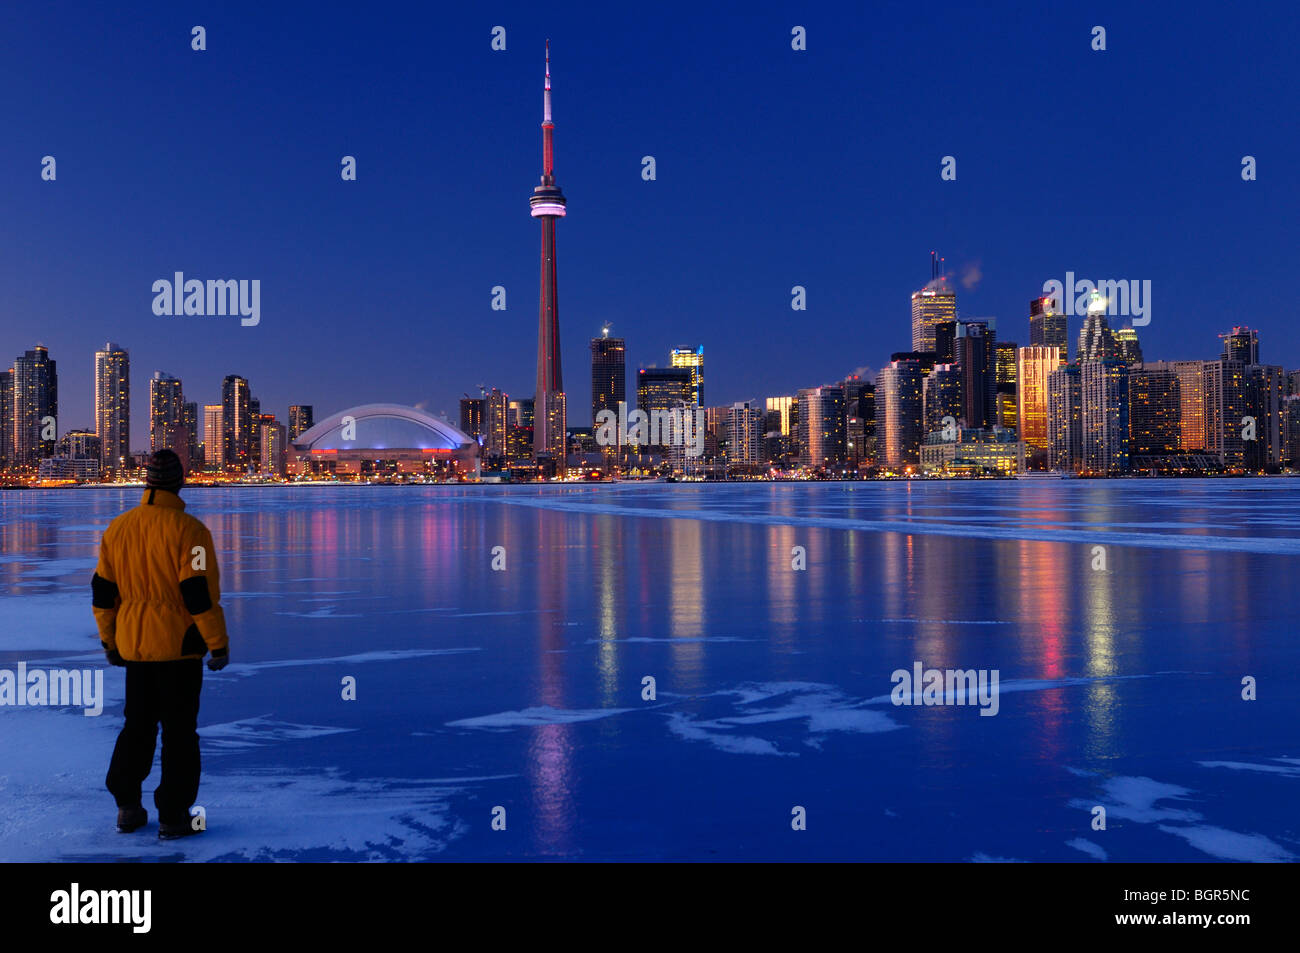 Homme debout sur lac gelé regardant l'Ontario Toronto city skyline lumière jusqu'au crépuscule et réfléchir sur la glace en hiver Banque D'Images